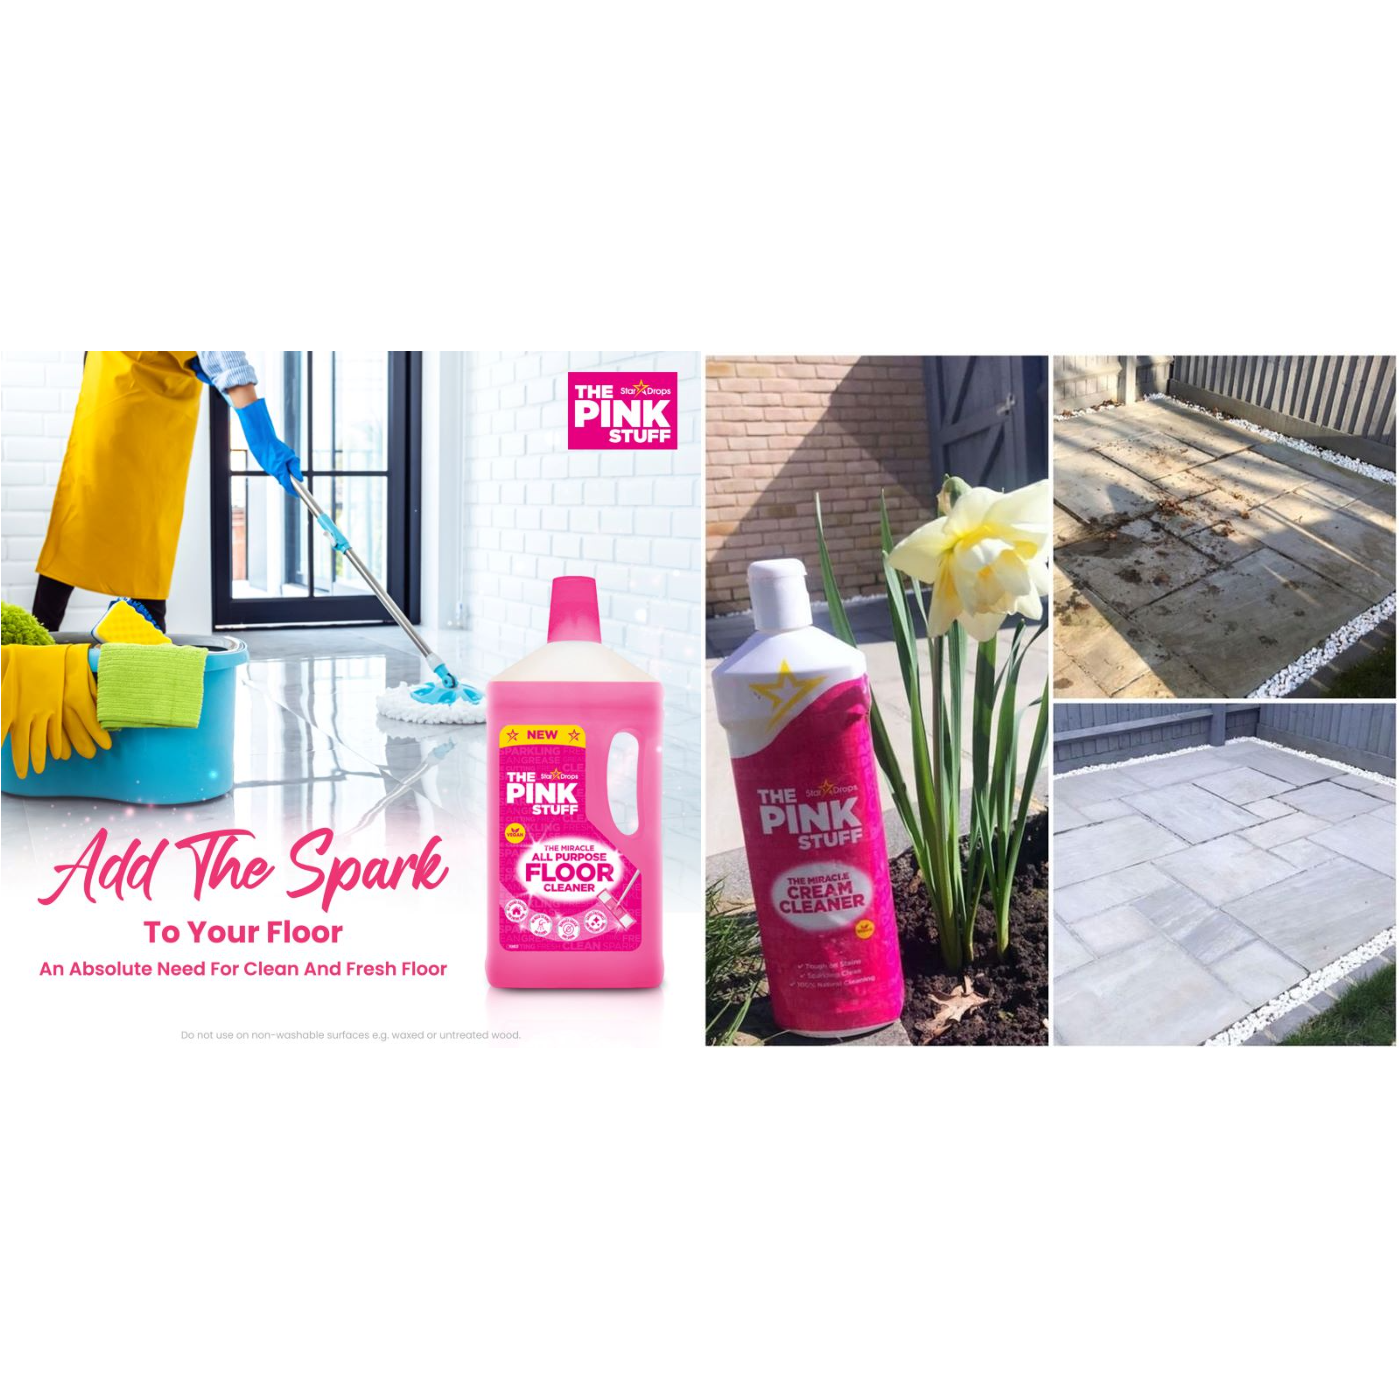 Stardrops - The Pink Stuff - The Miracle Bathroom Foam Cleaner 750ml 3-Pack  Bundle (3 Bathroom Foam Spray)